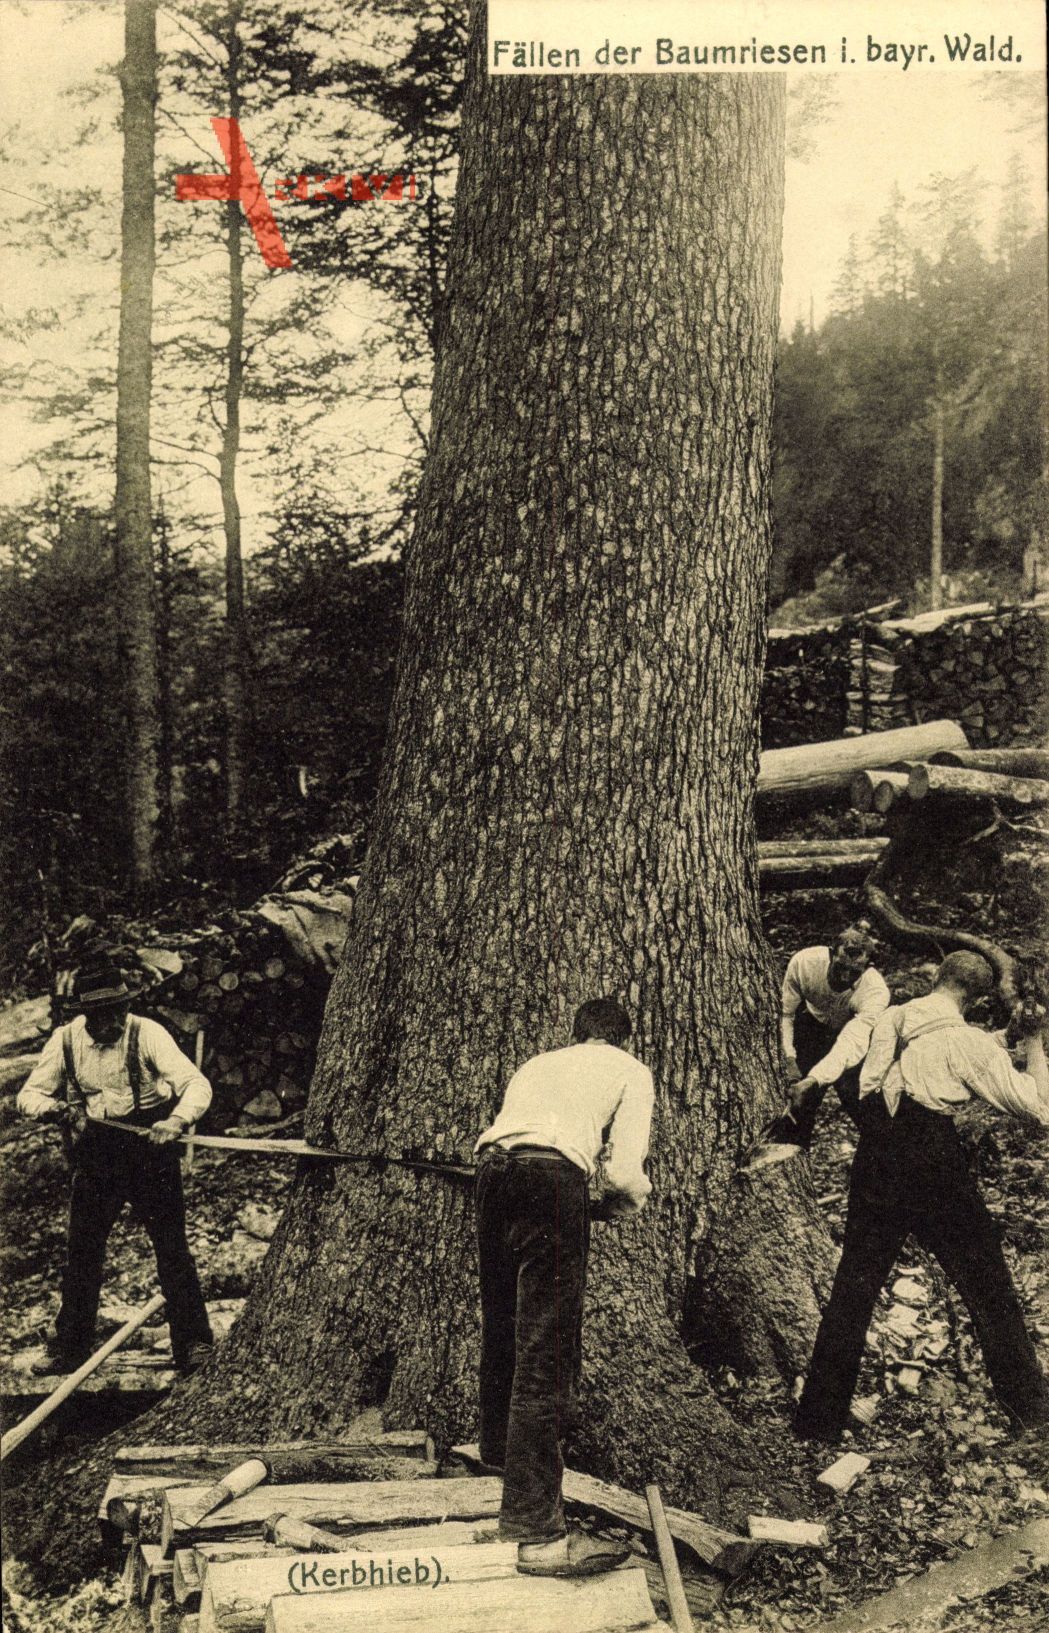 Fällen der Baumriesen im bayrischen Wald, Förster bei der Arbeit